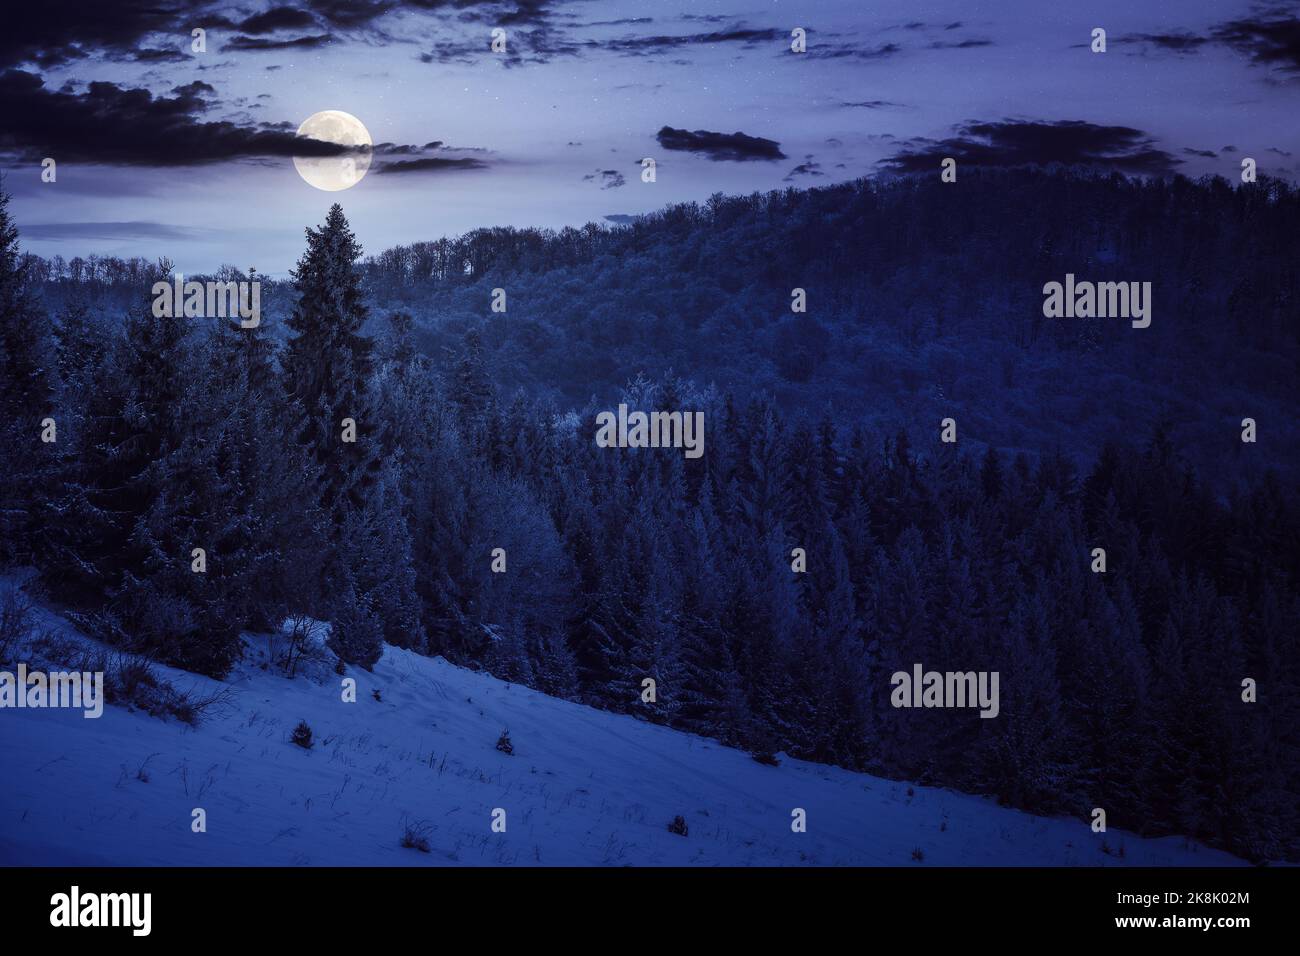 Luna d'inverno immagini e fotografie stock ad alta risoluzione - Pagina 8 -  Alamy